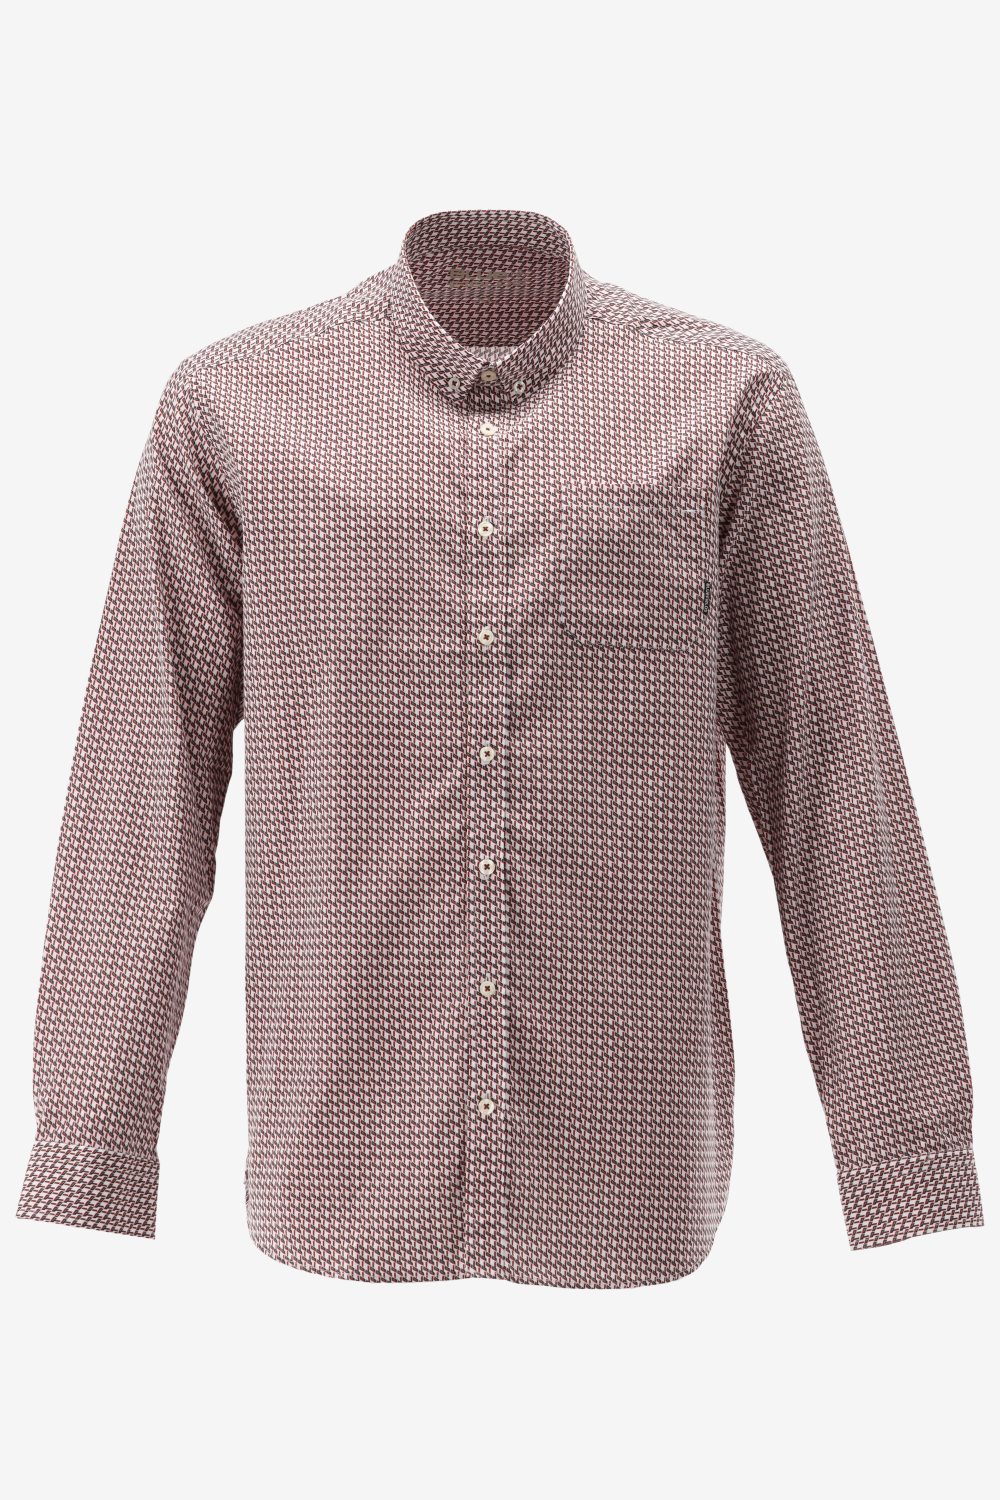 BlueFields Overhemd Shirt Ls Printed Pop 21442003 1147 Mannen Maat - L